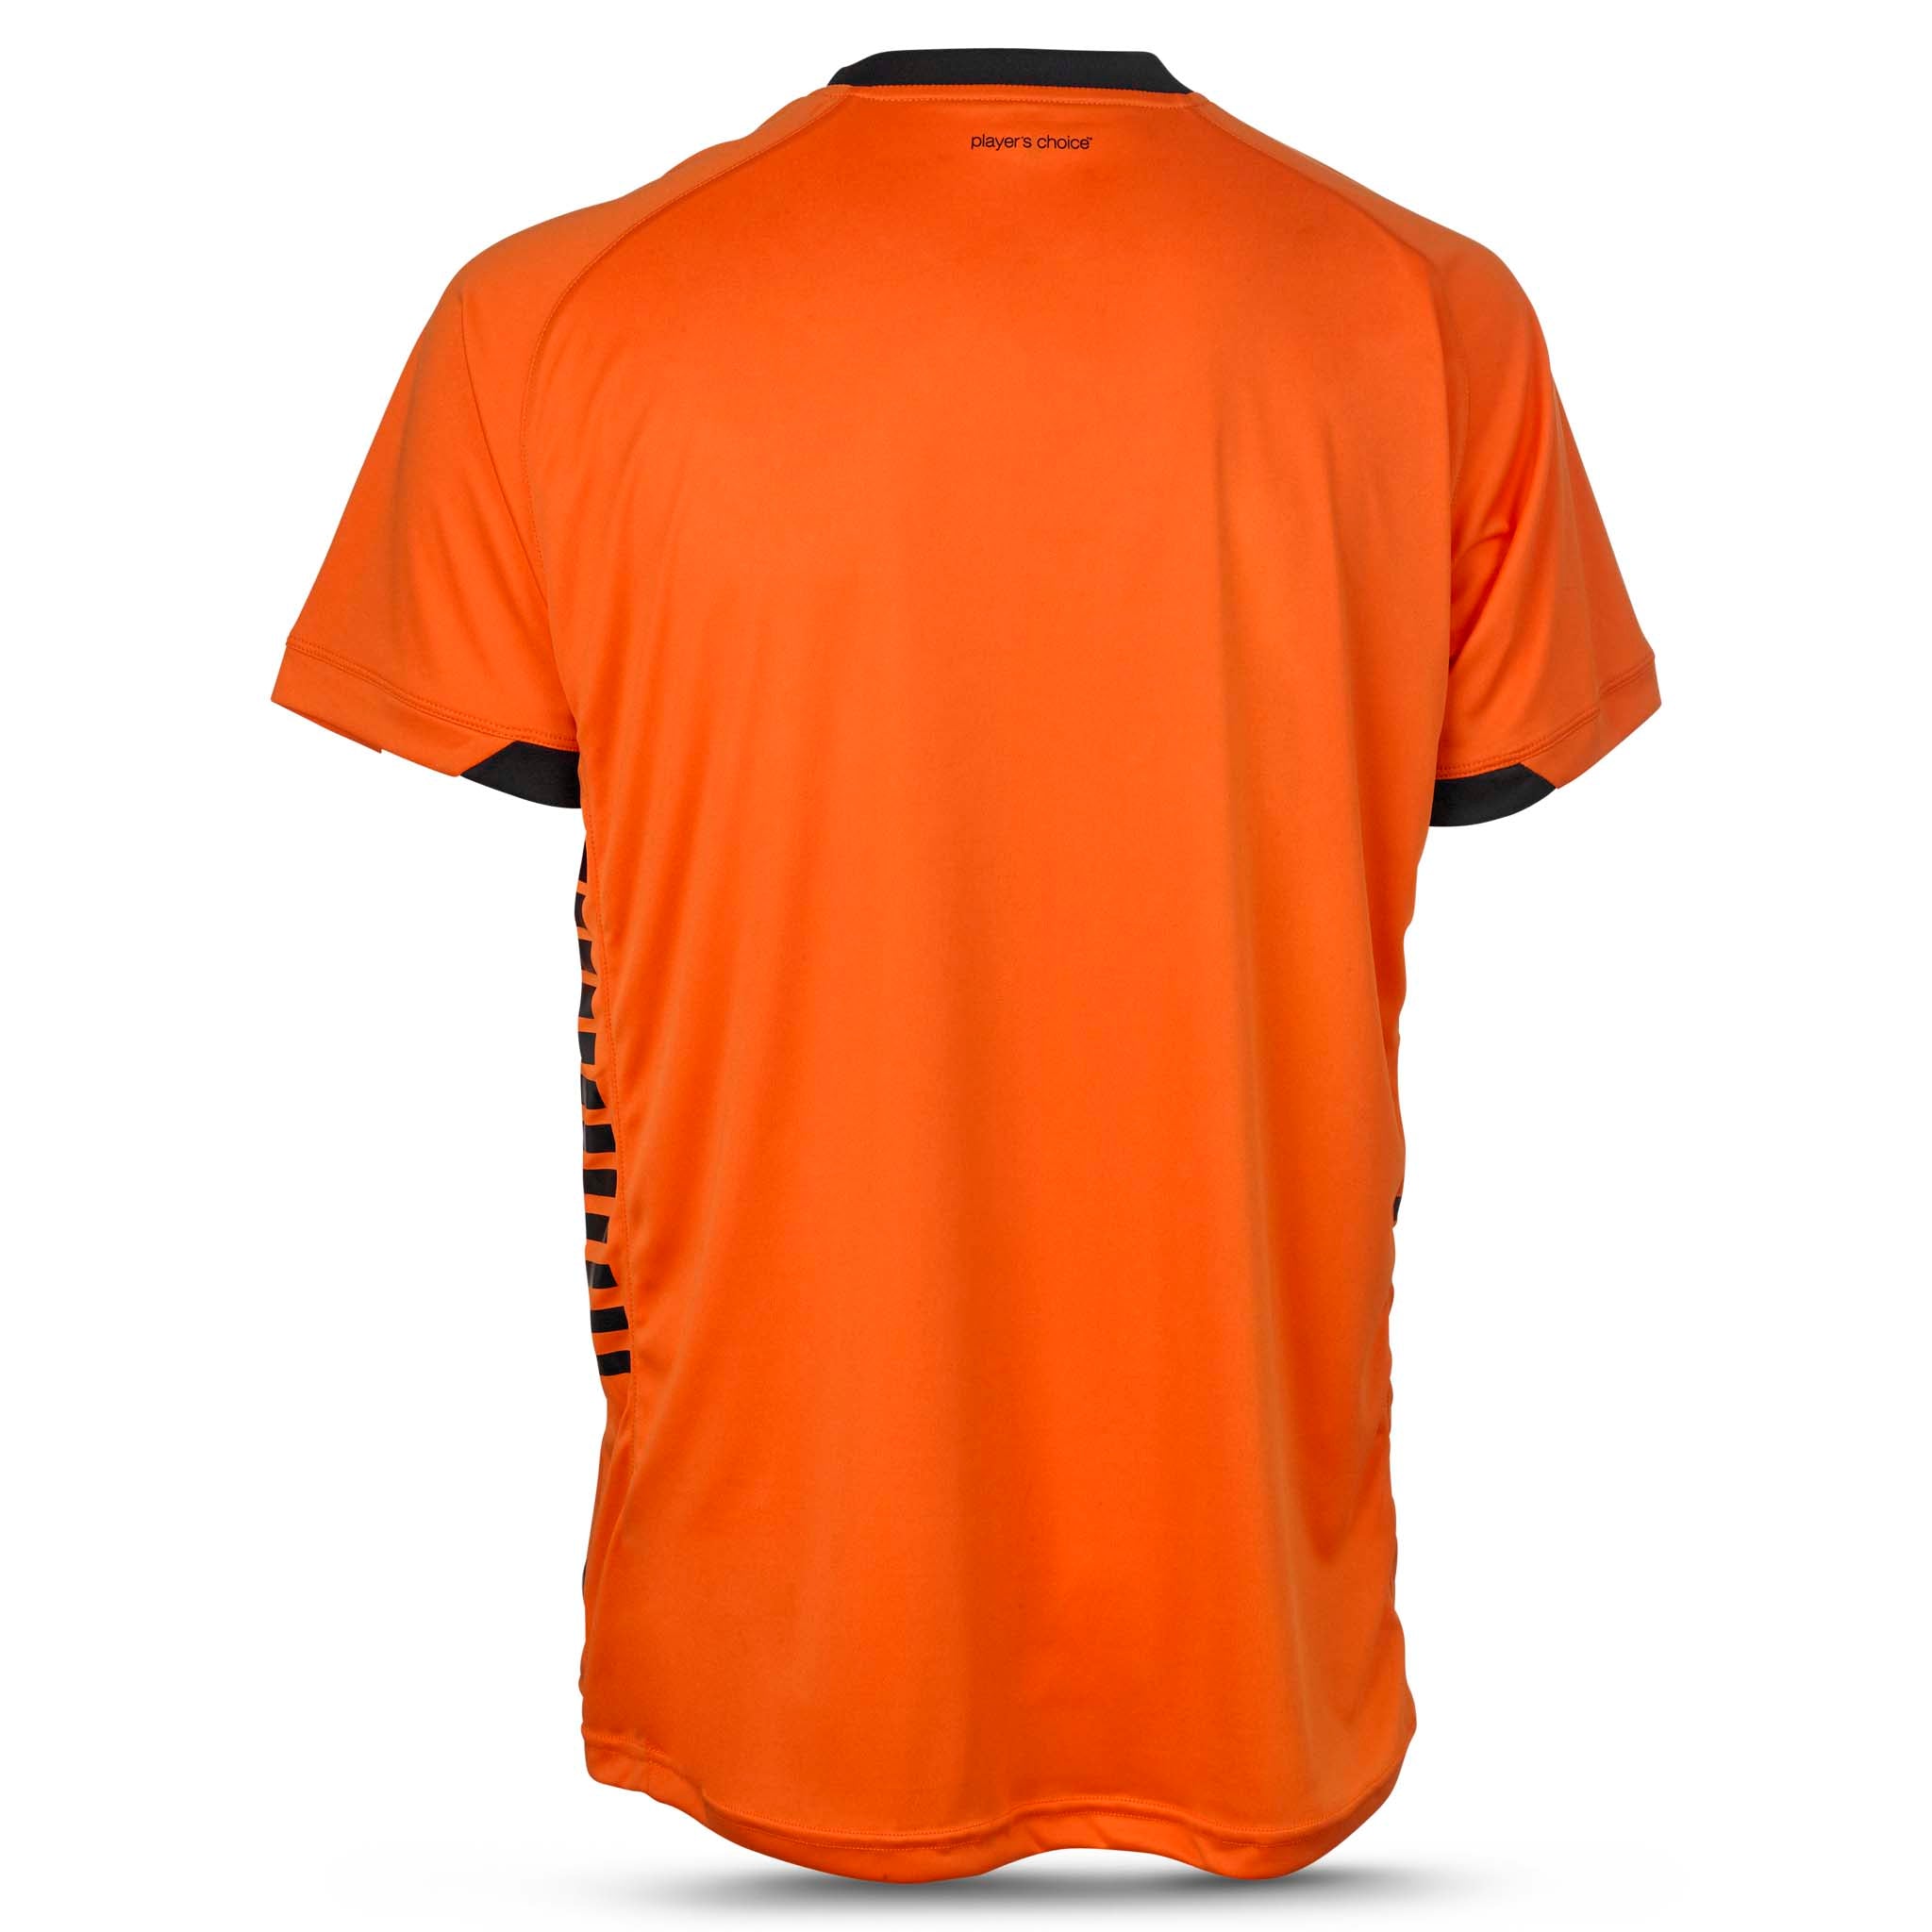 Spain Kortärmad spelartröja #färg_ #färg_orange #färg_orange